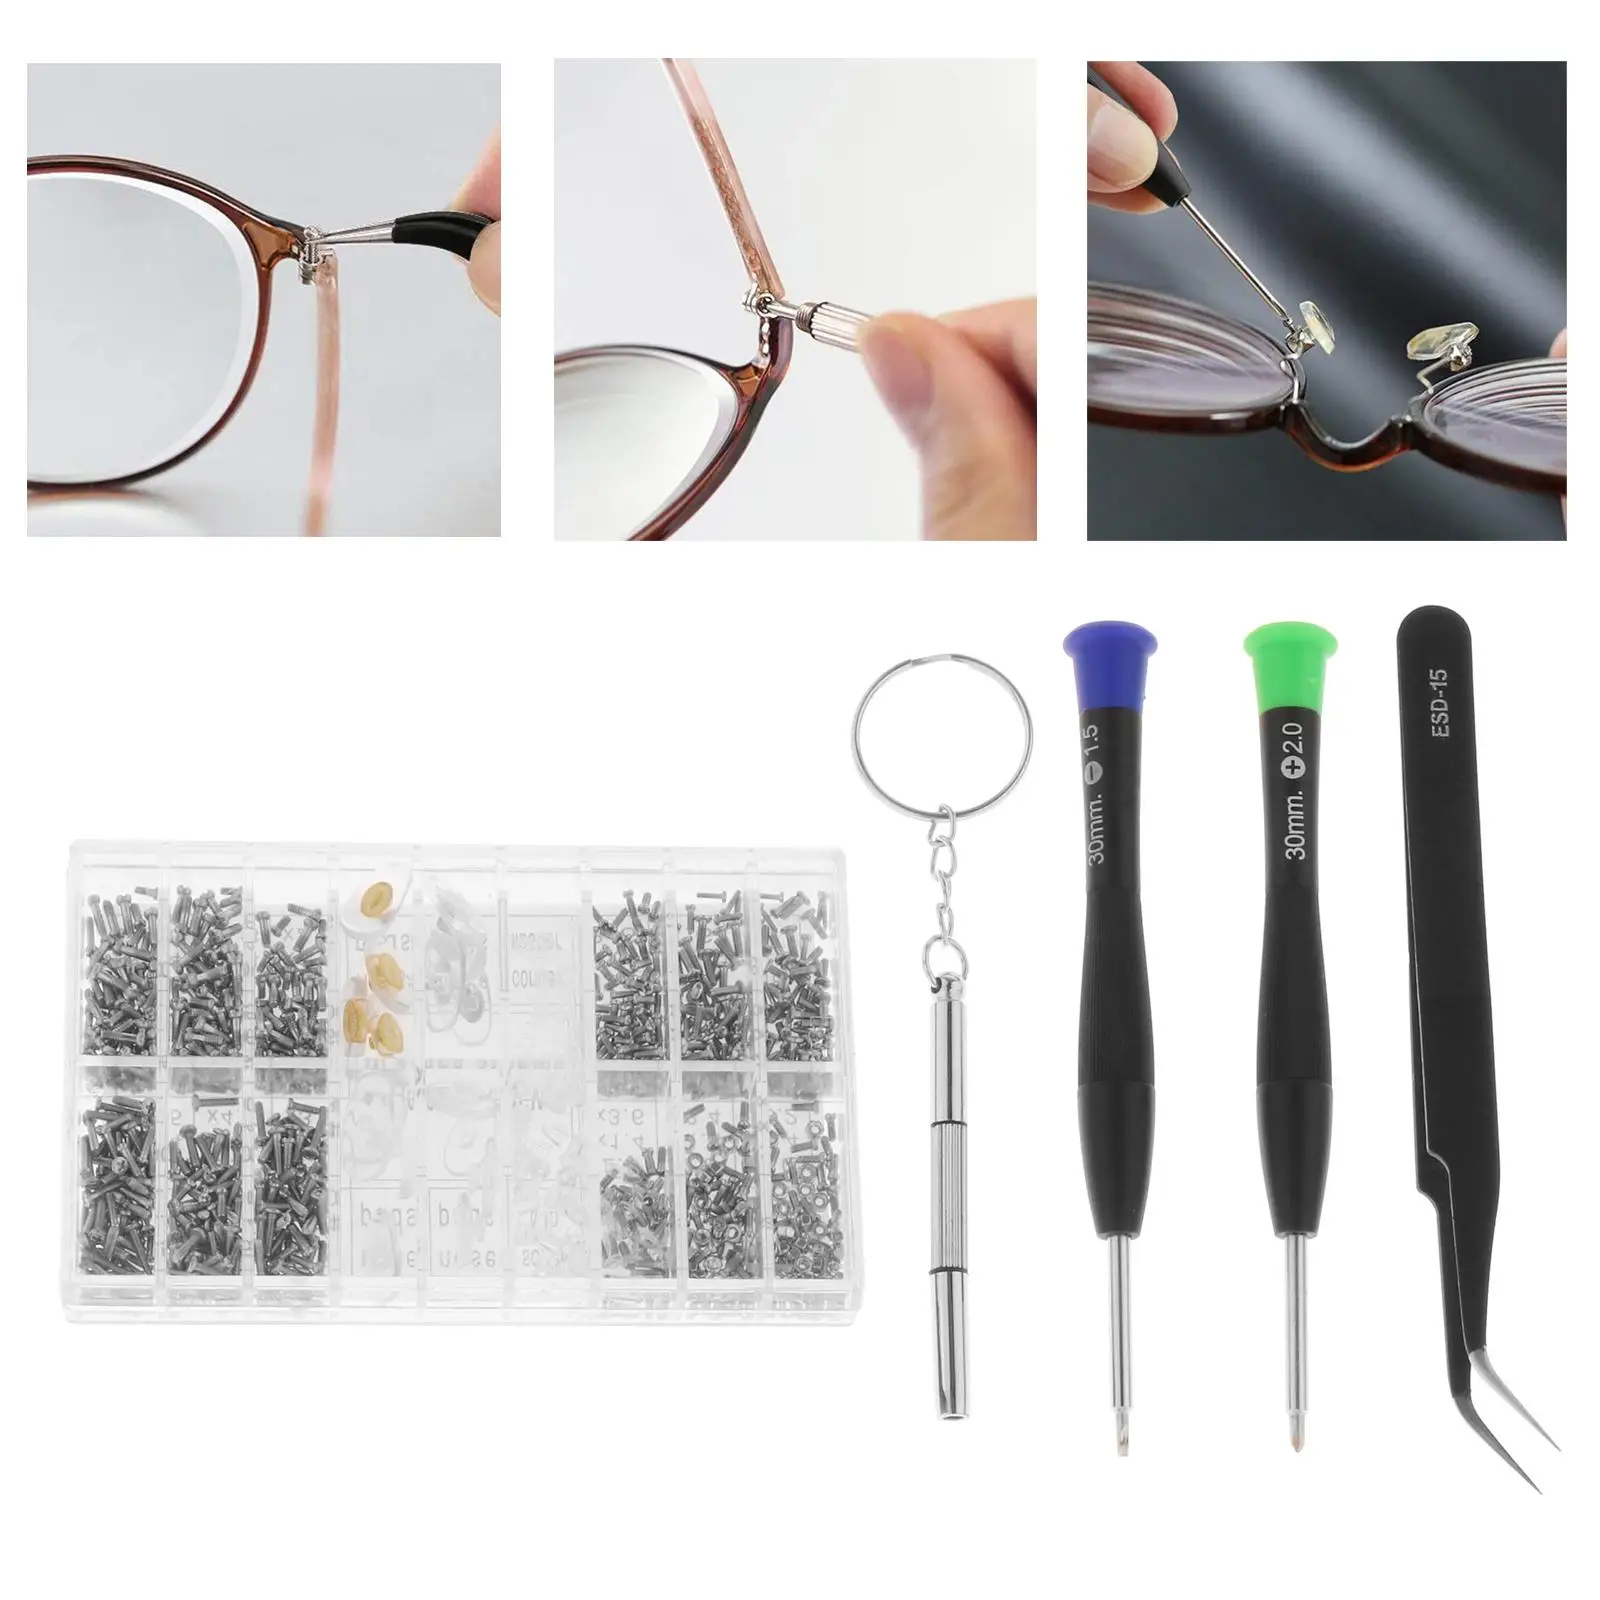 Eyeglasses Repair Kit Include Nose Pads Tweezer Stainless Steel Screws Eye Glass Repairing Tool for Eyewear Eyeglass Watch Clock